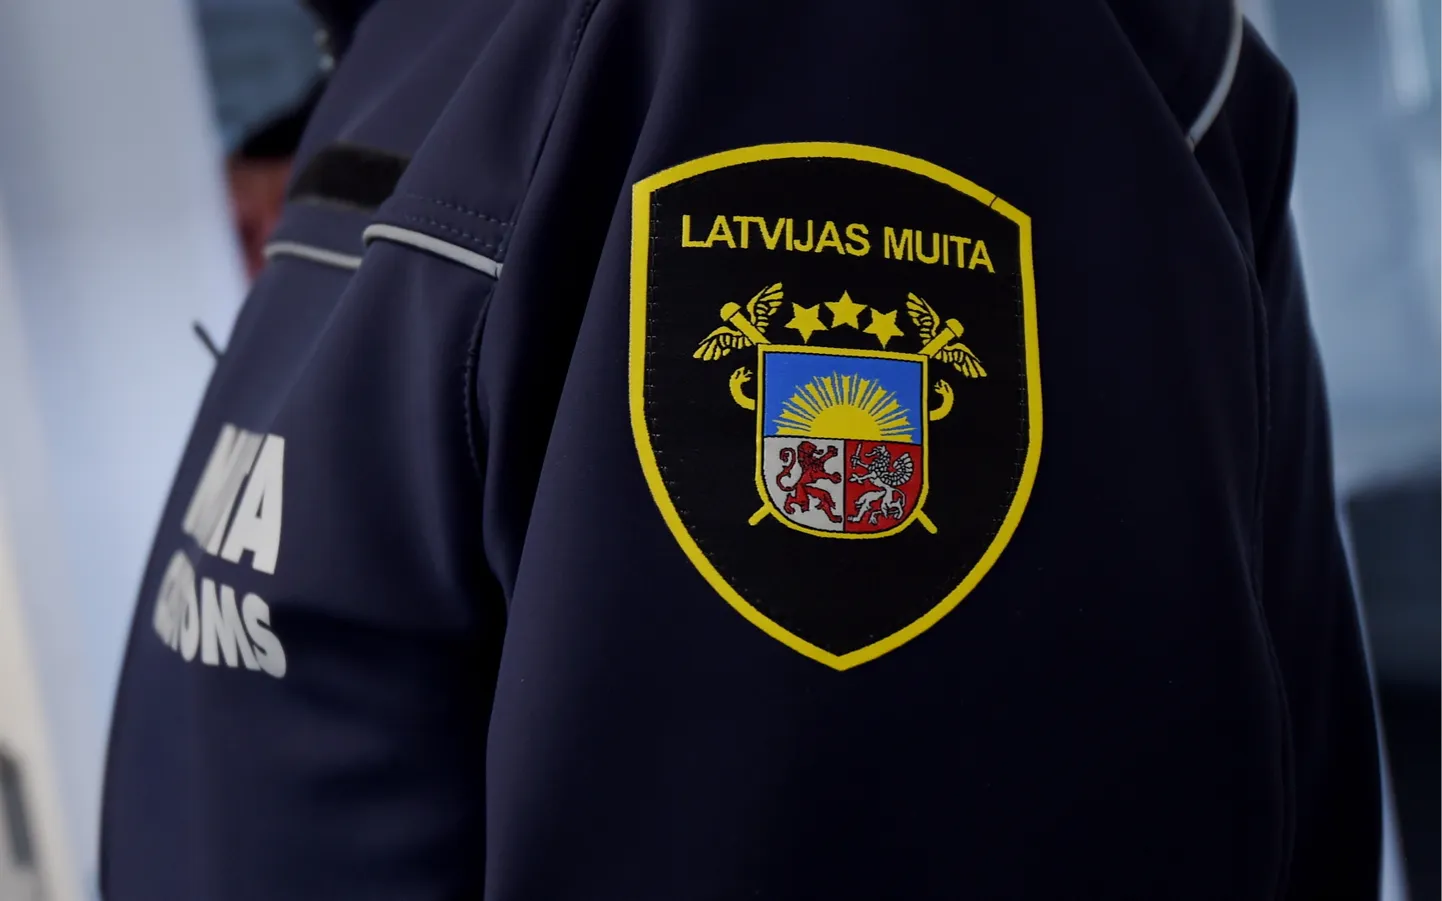 Latvijas muitas logo.